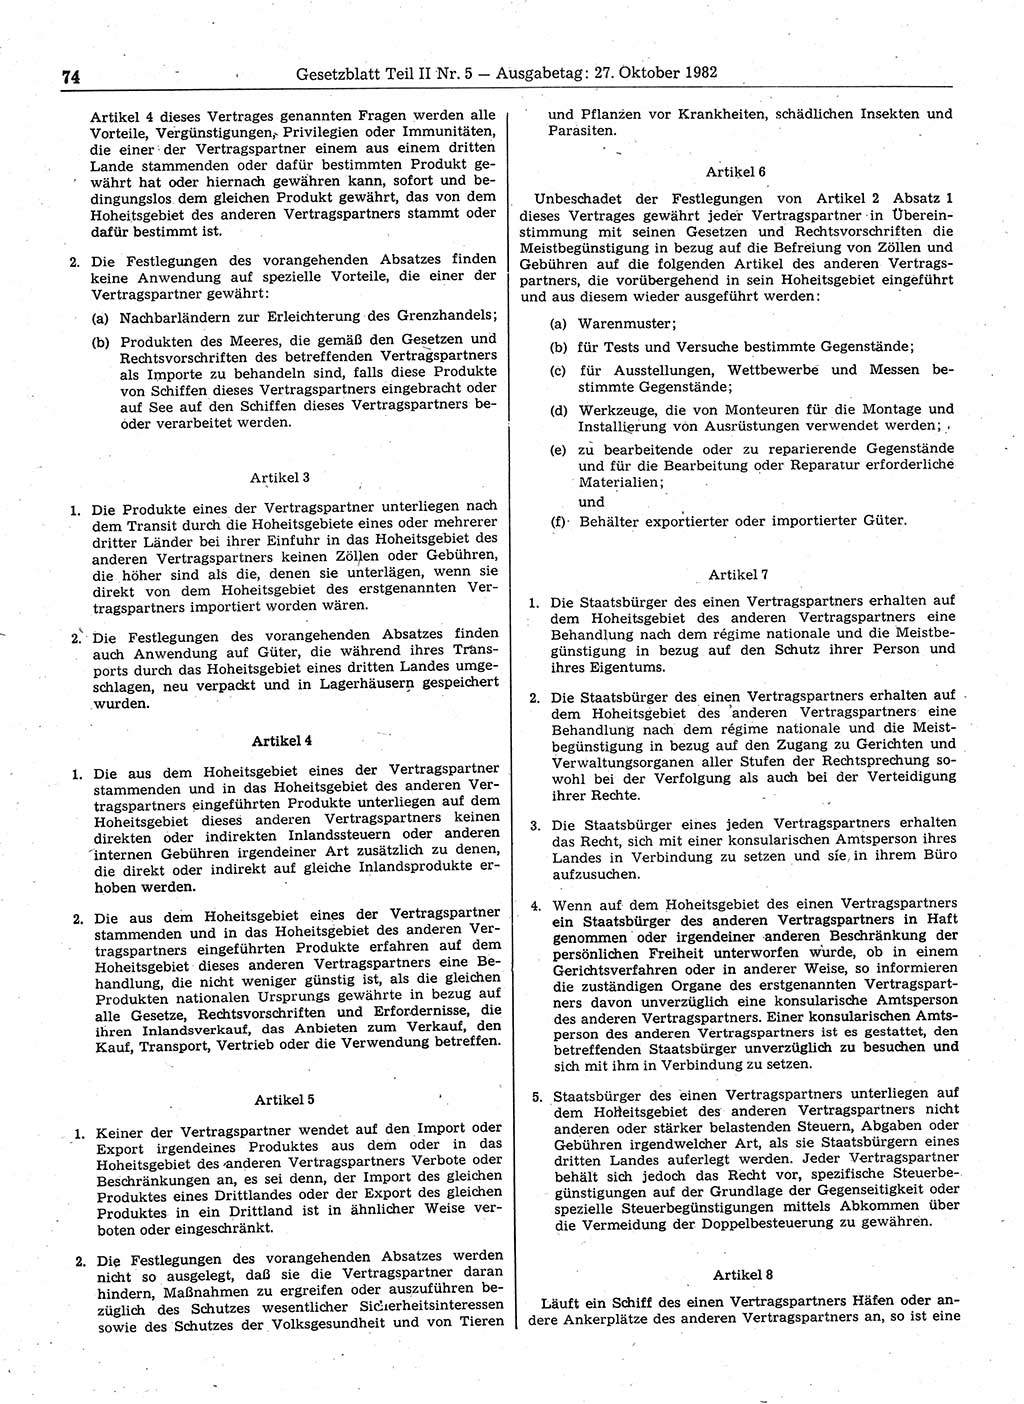 Gesetzblatt (GBl.) der Deutschen Demokratischen Republik (DDR) Teil ⅠⅠ 1982, Seite 74 (GBl. DDR ⅠⅠ 1982, S. 74)